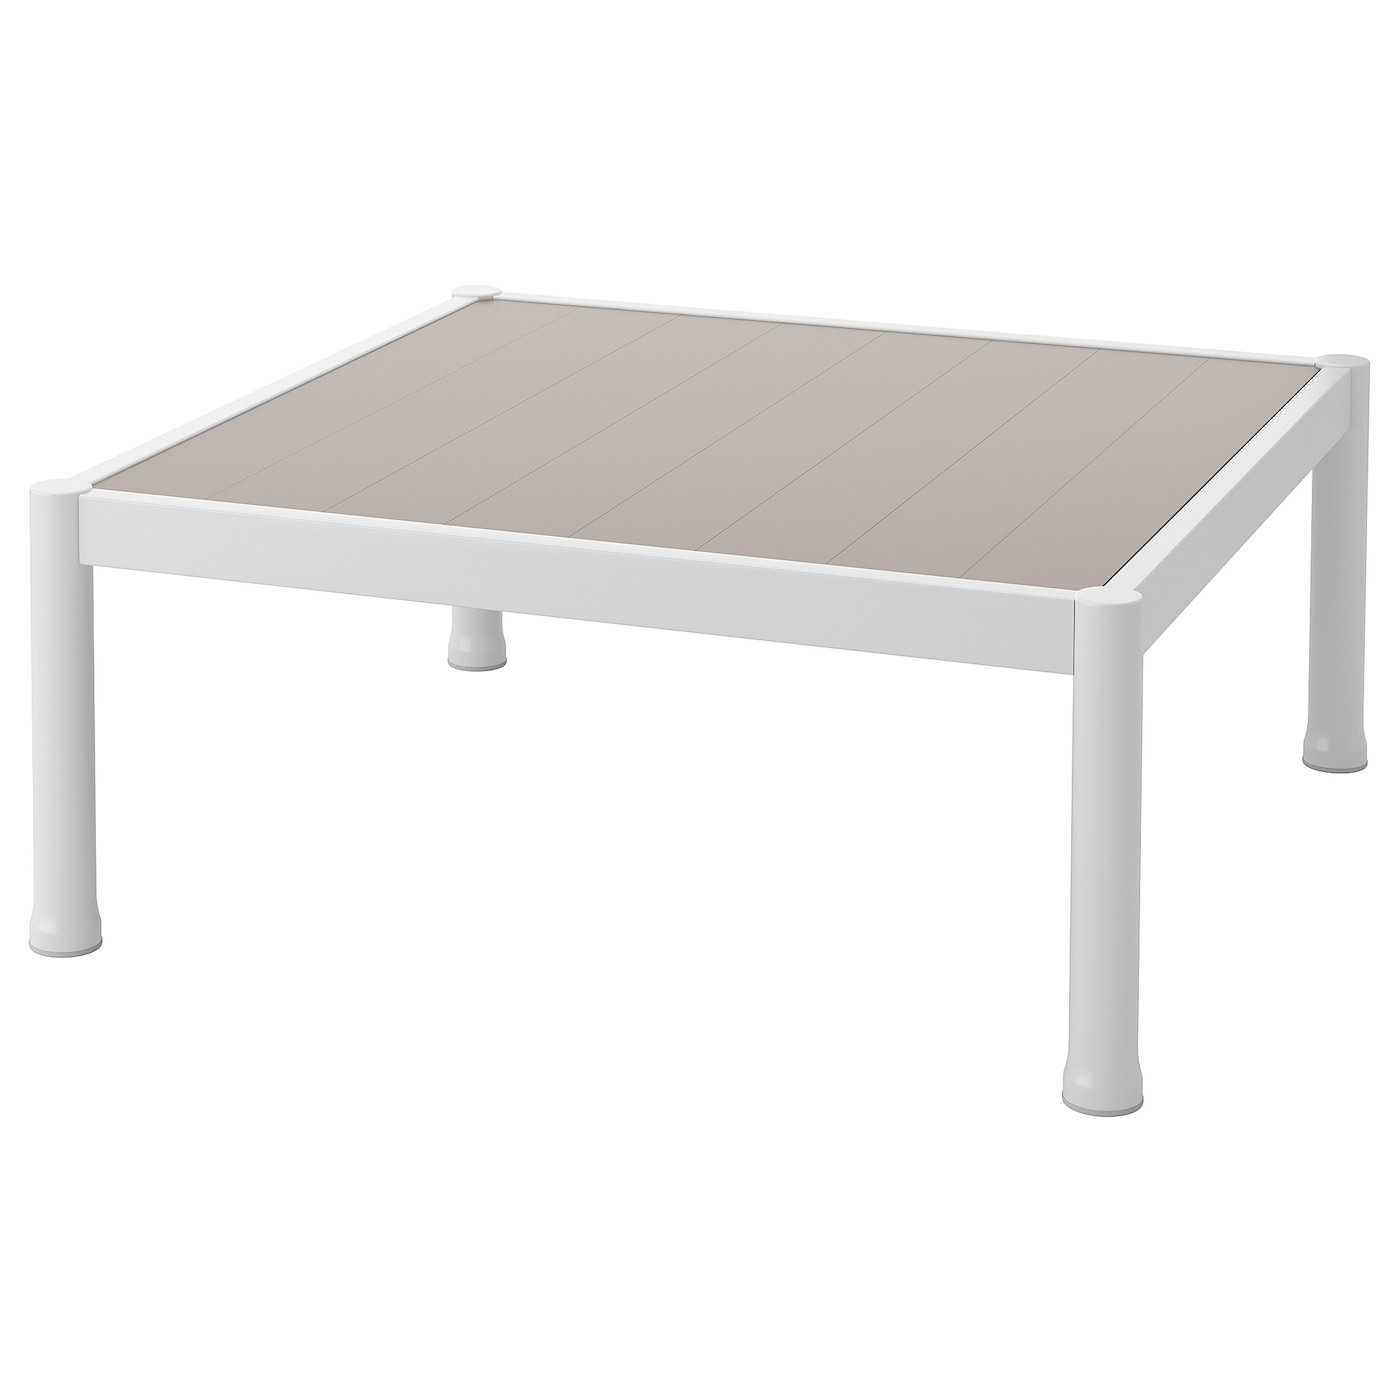 Журнальный столик, садовый - IKEA SEGERÖN/SEGERON, белый/бежевый, 73x73х30см, СЕГЕРОН ИКЕА